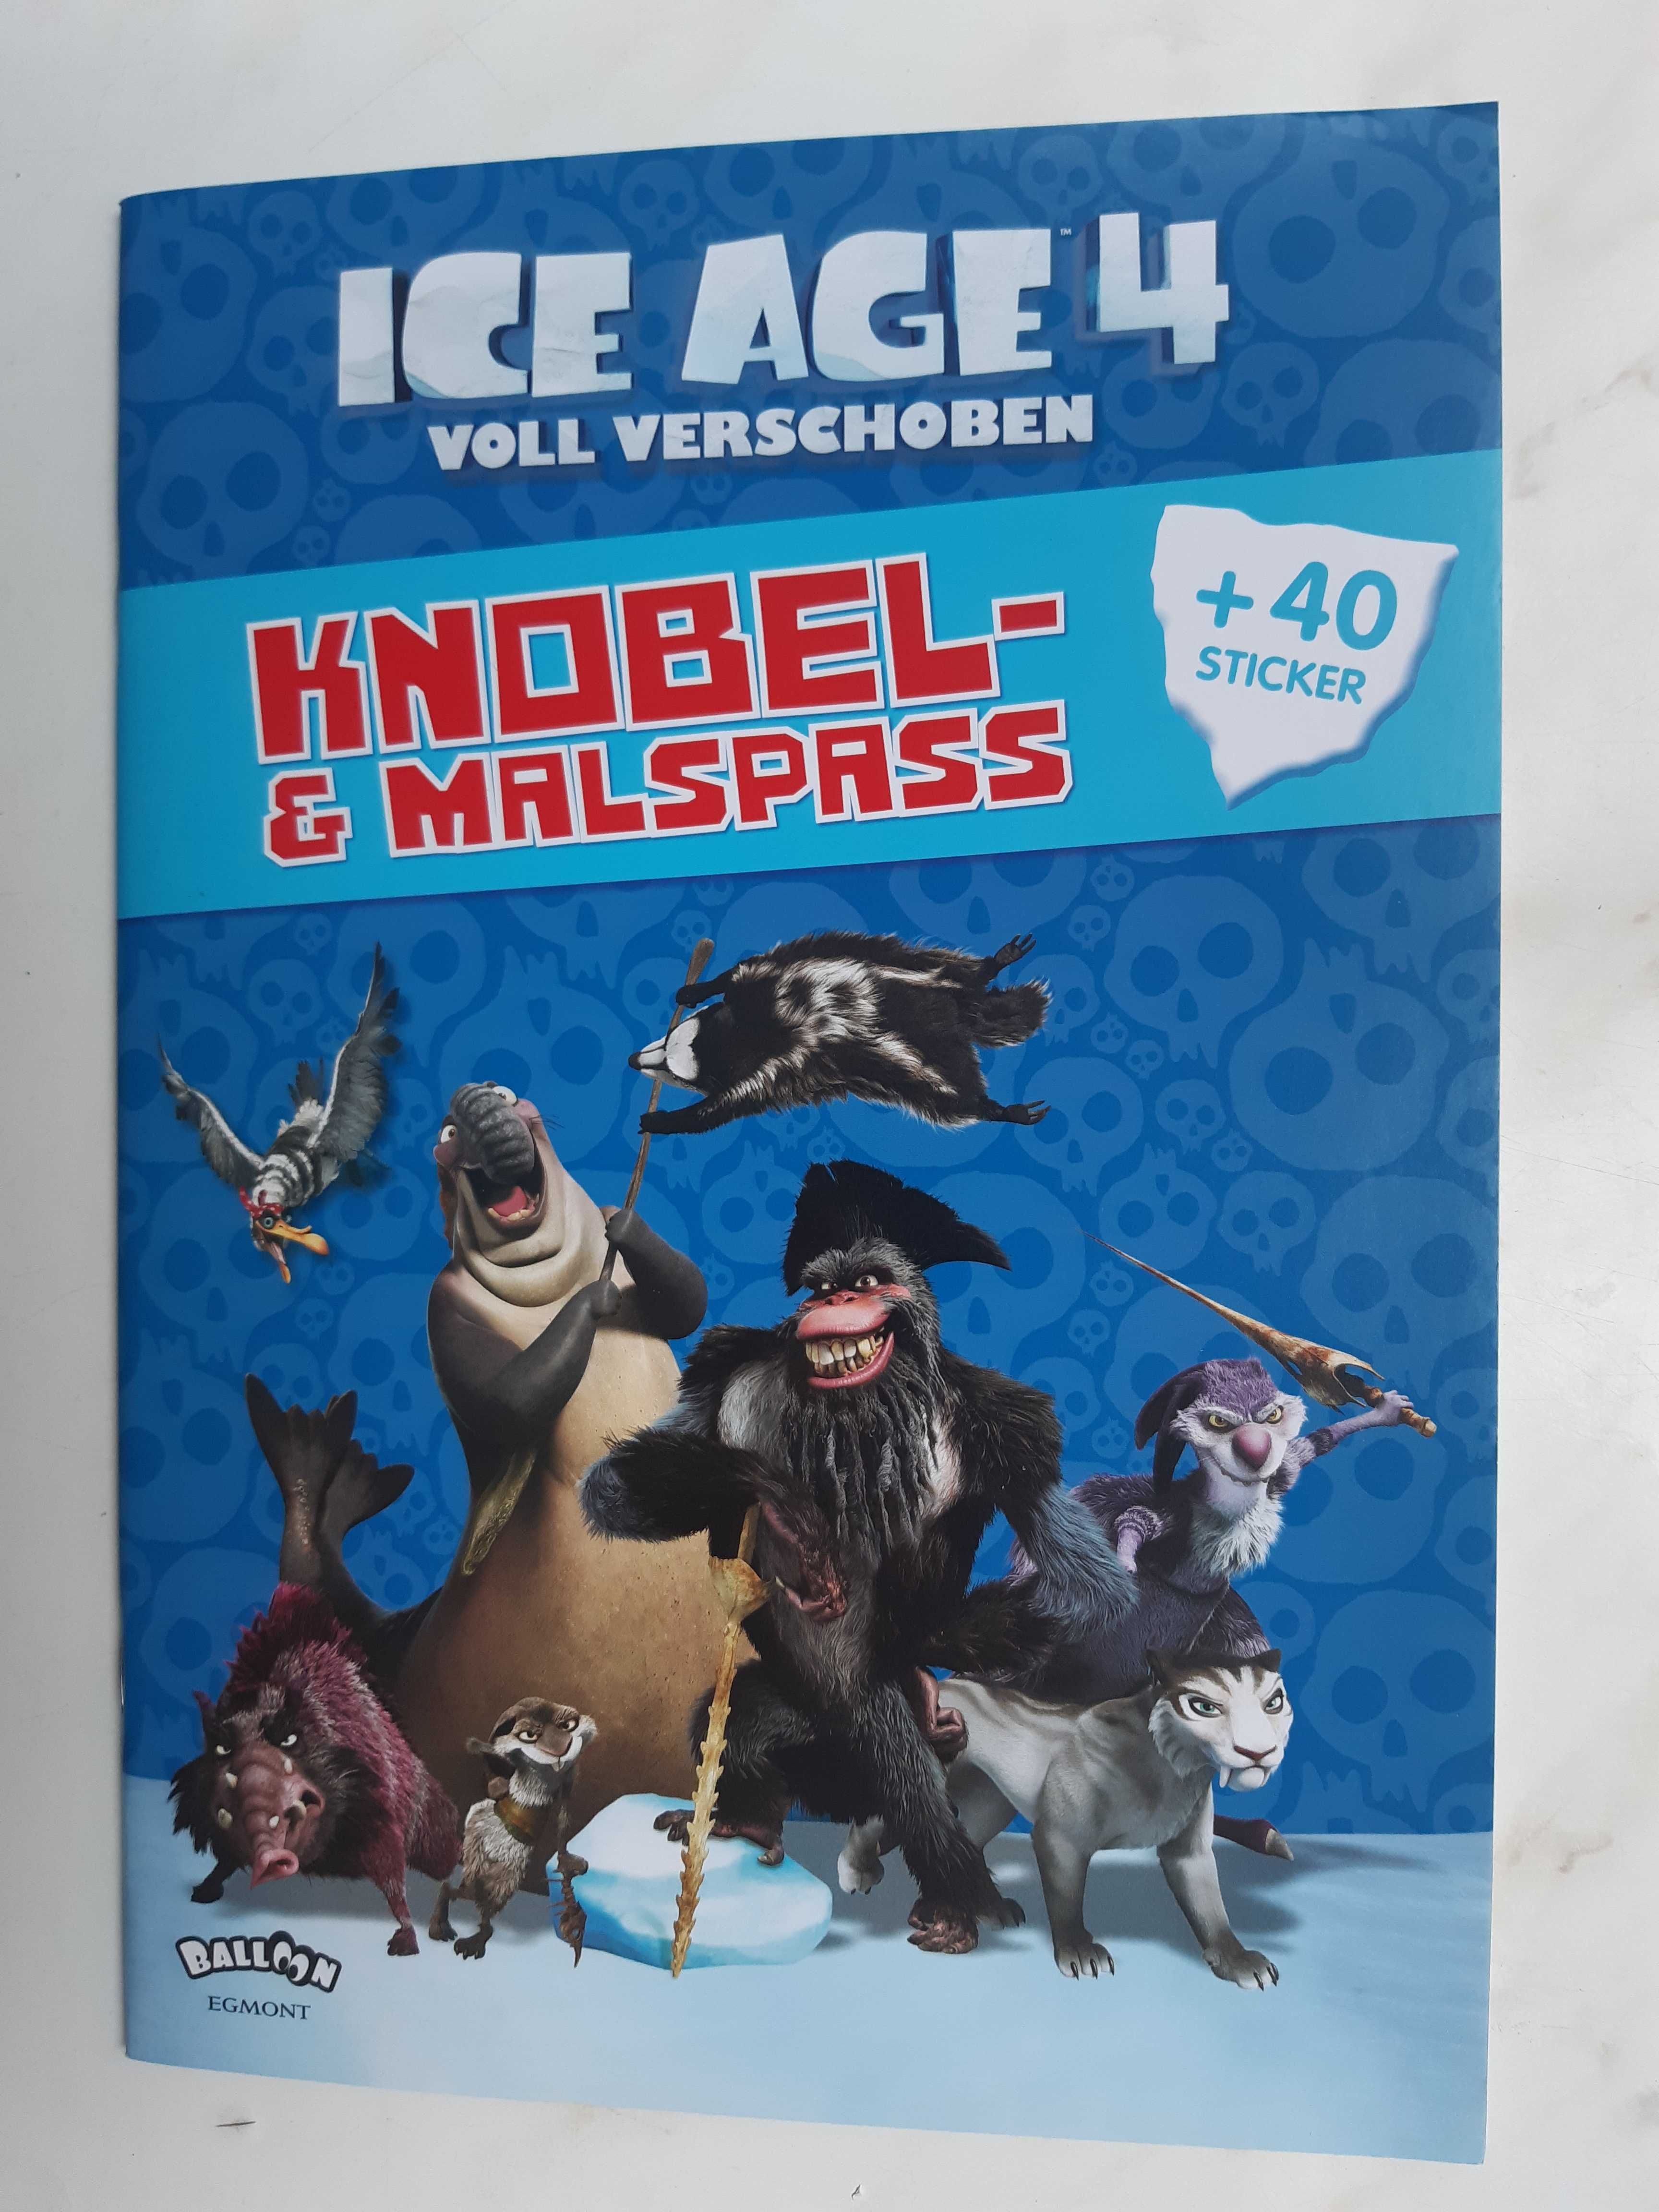 Ice Age 4 Voll verschoben_Knobel Malspass+40stickers